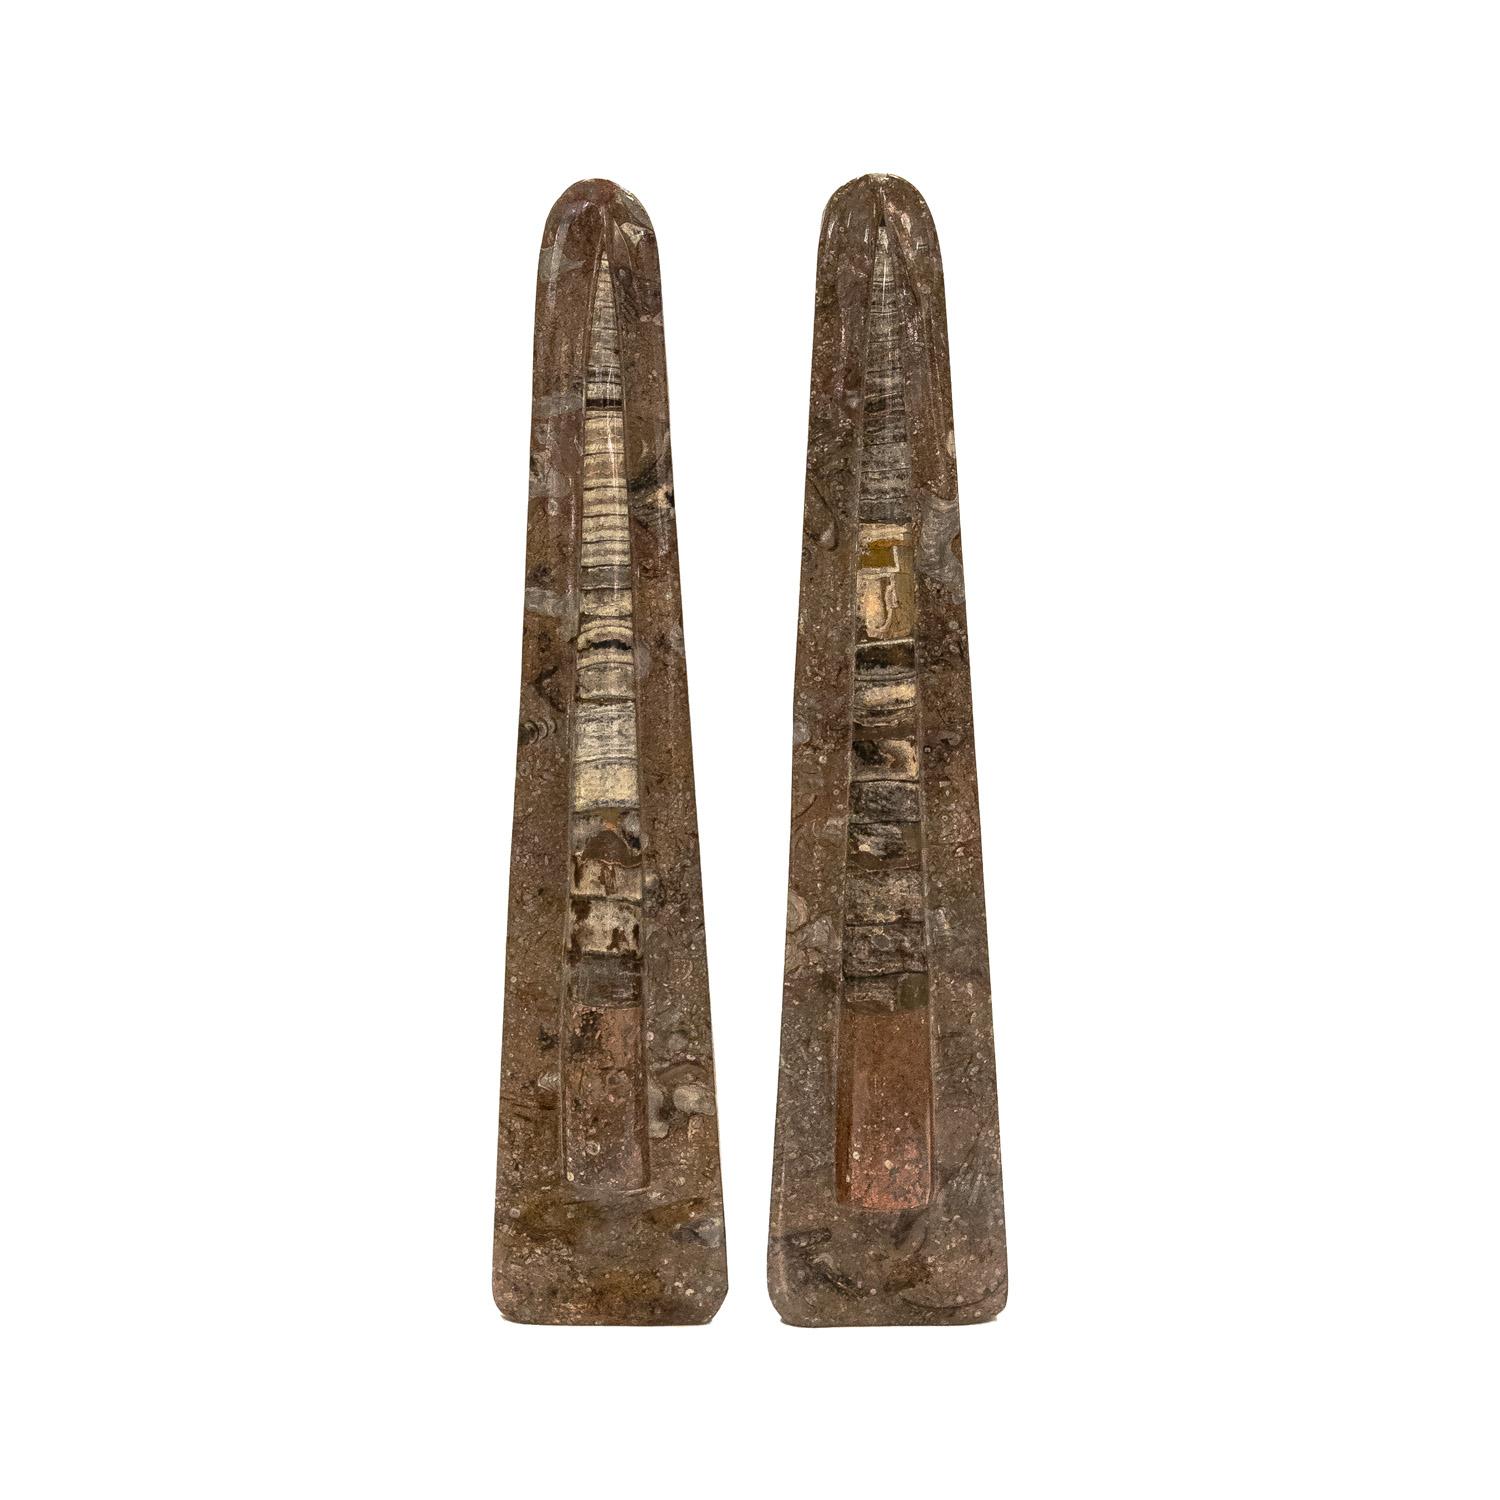 Beeindruckendes Paar obeliskförmiger, polierter, ausgestorbener fossiler Skulpturen (Orthoceras) mit schönen organischen Variationen, die 400 Millionen Jahre alt sind und aus Schweden und den baltischen Staaten stammen. Sie wurden in den Vereinigten